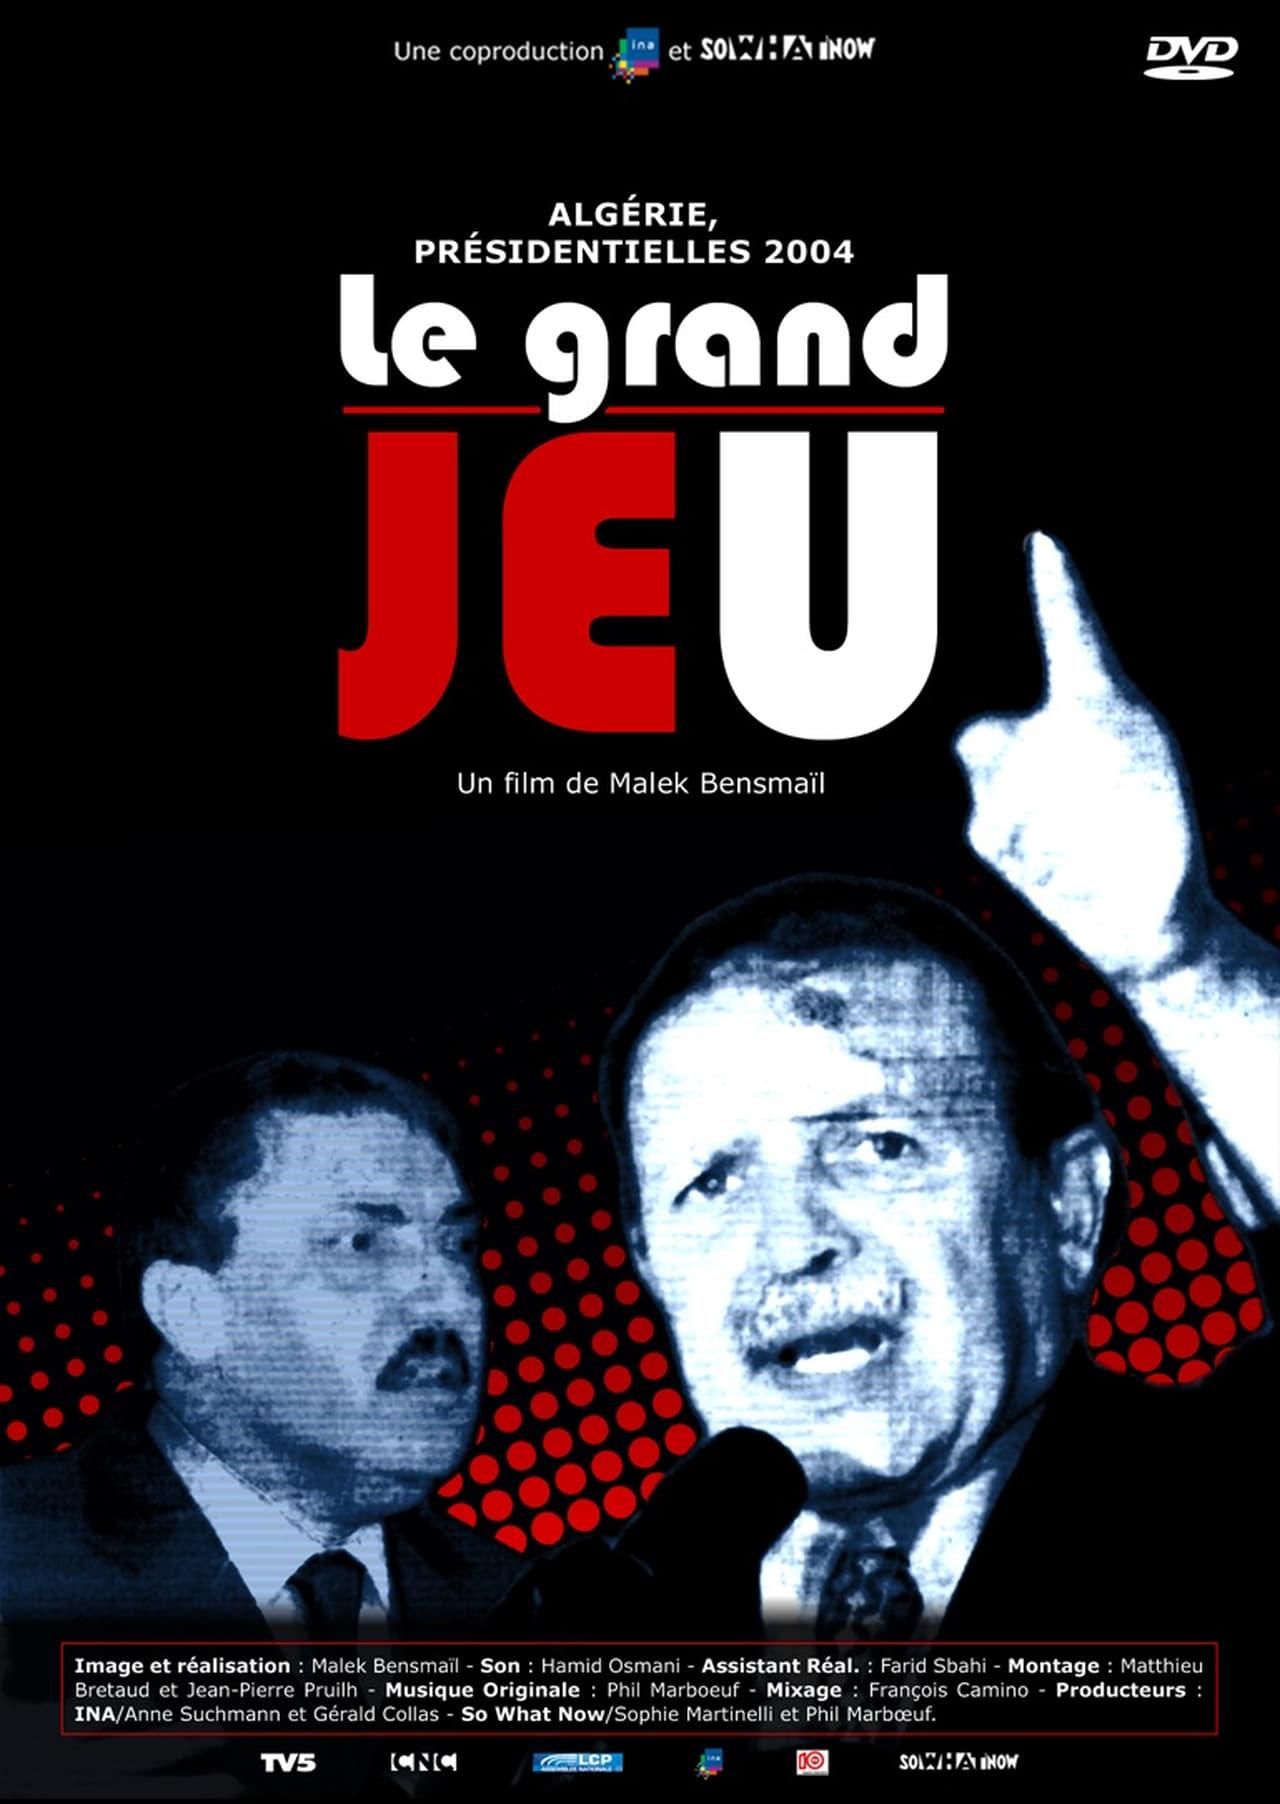 Le Grand Jeu poster